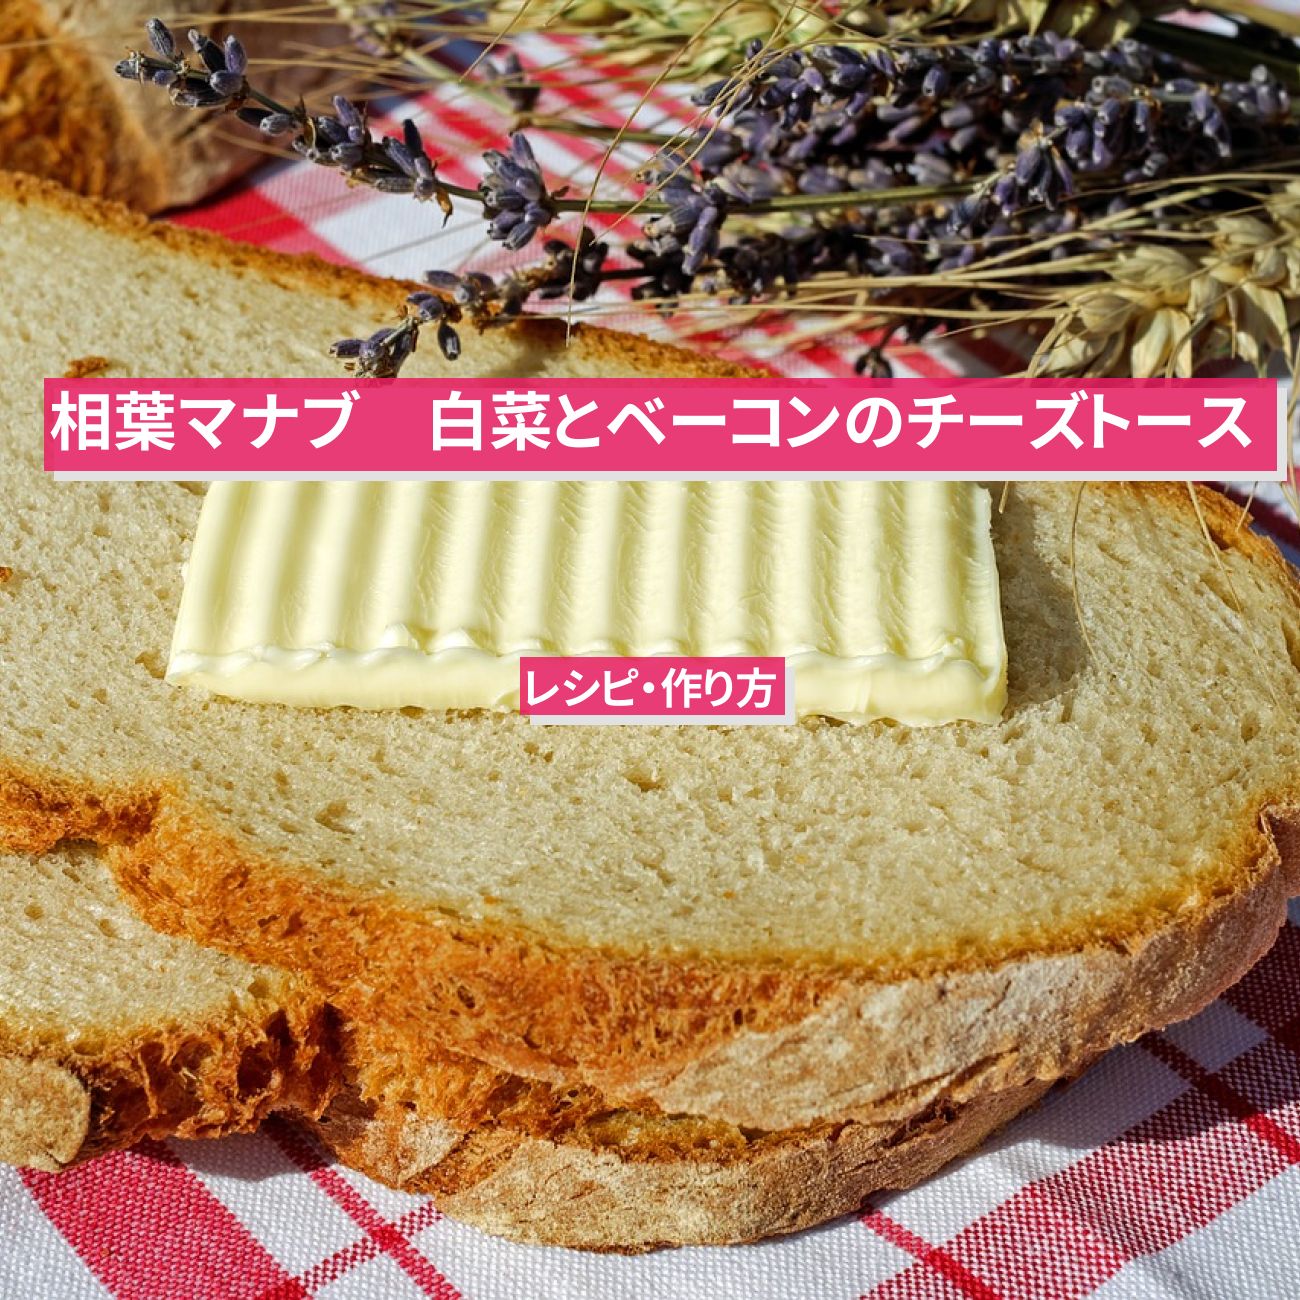 【相葉マナブ】『白菜とベーコンのチーズトースト』のレシピ・作り方